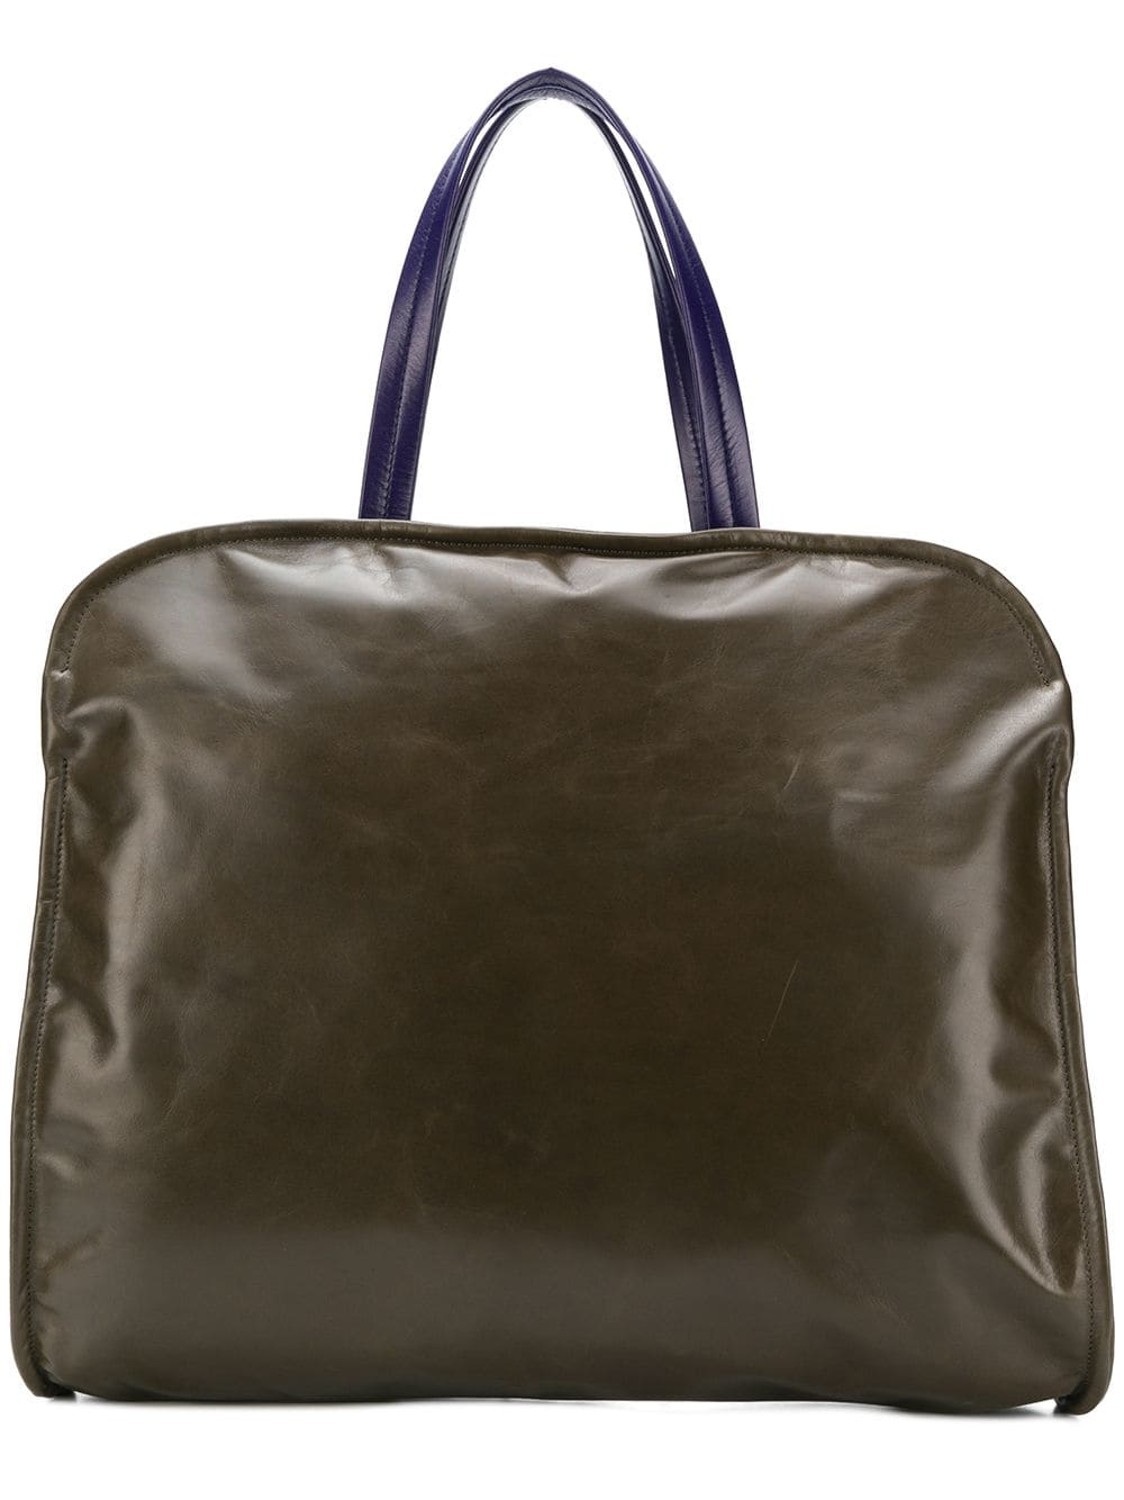 shop Marni  Borse: Borsa Marni, modello shopping bag, in pelle verde e viola, chiusura con zip, borsellino interno con zip.

Composizione: 100% pelle. number 1317